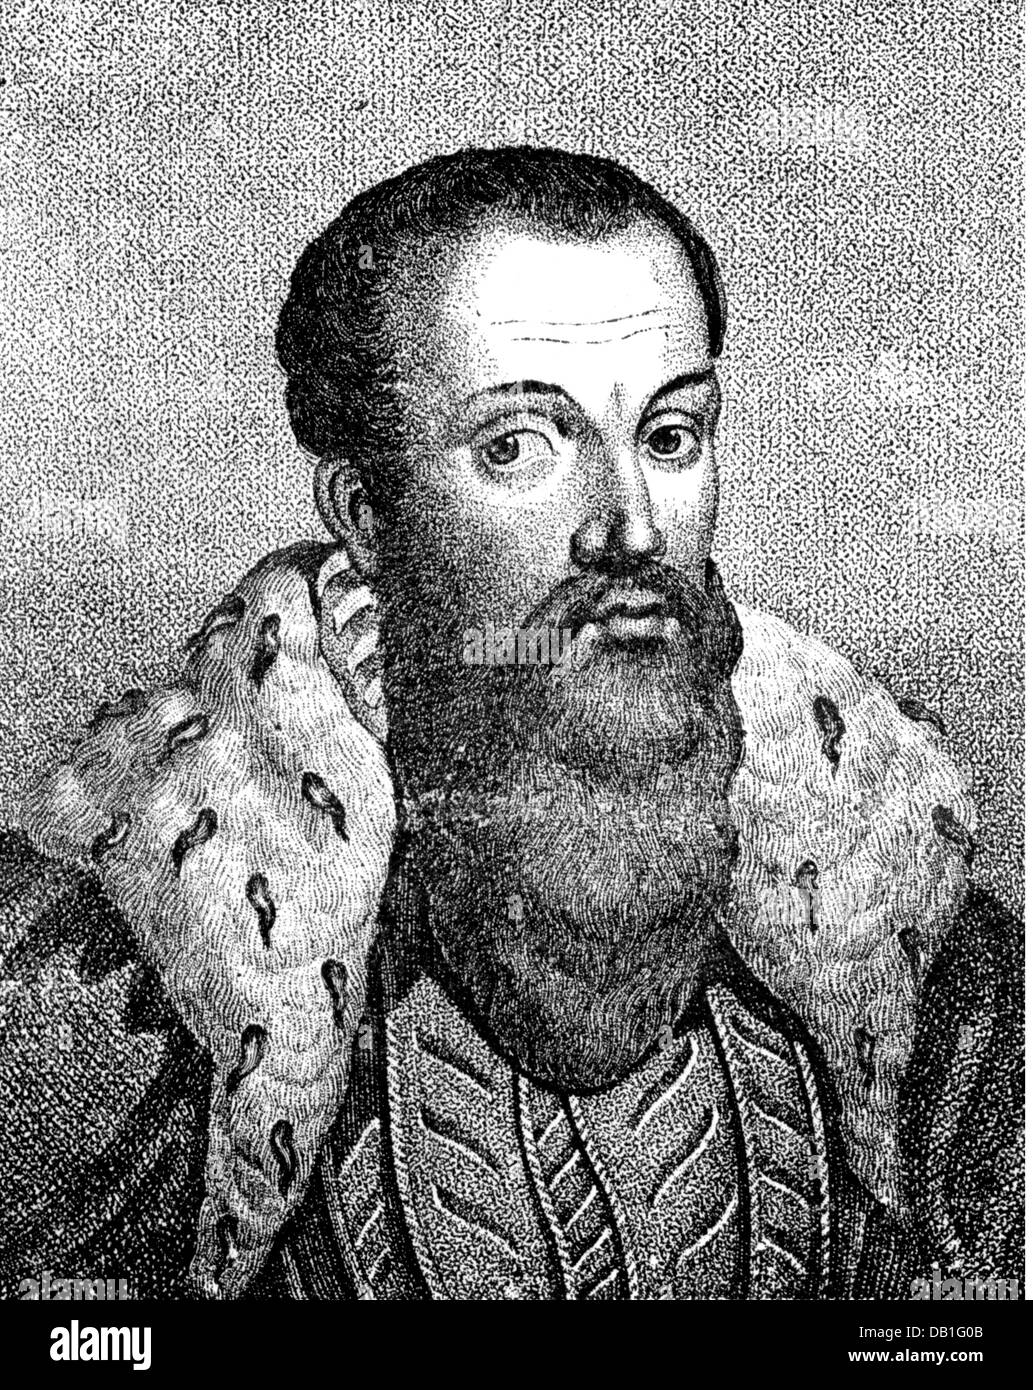 Maurice, 21.3.1521 - 11.7.1553, Principe-Elettore di Sassonia 18.8.1547 - 11.7.1553, ritratto, incisione in legno, 19th secolo, Foto Stock